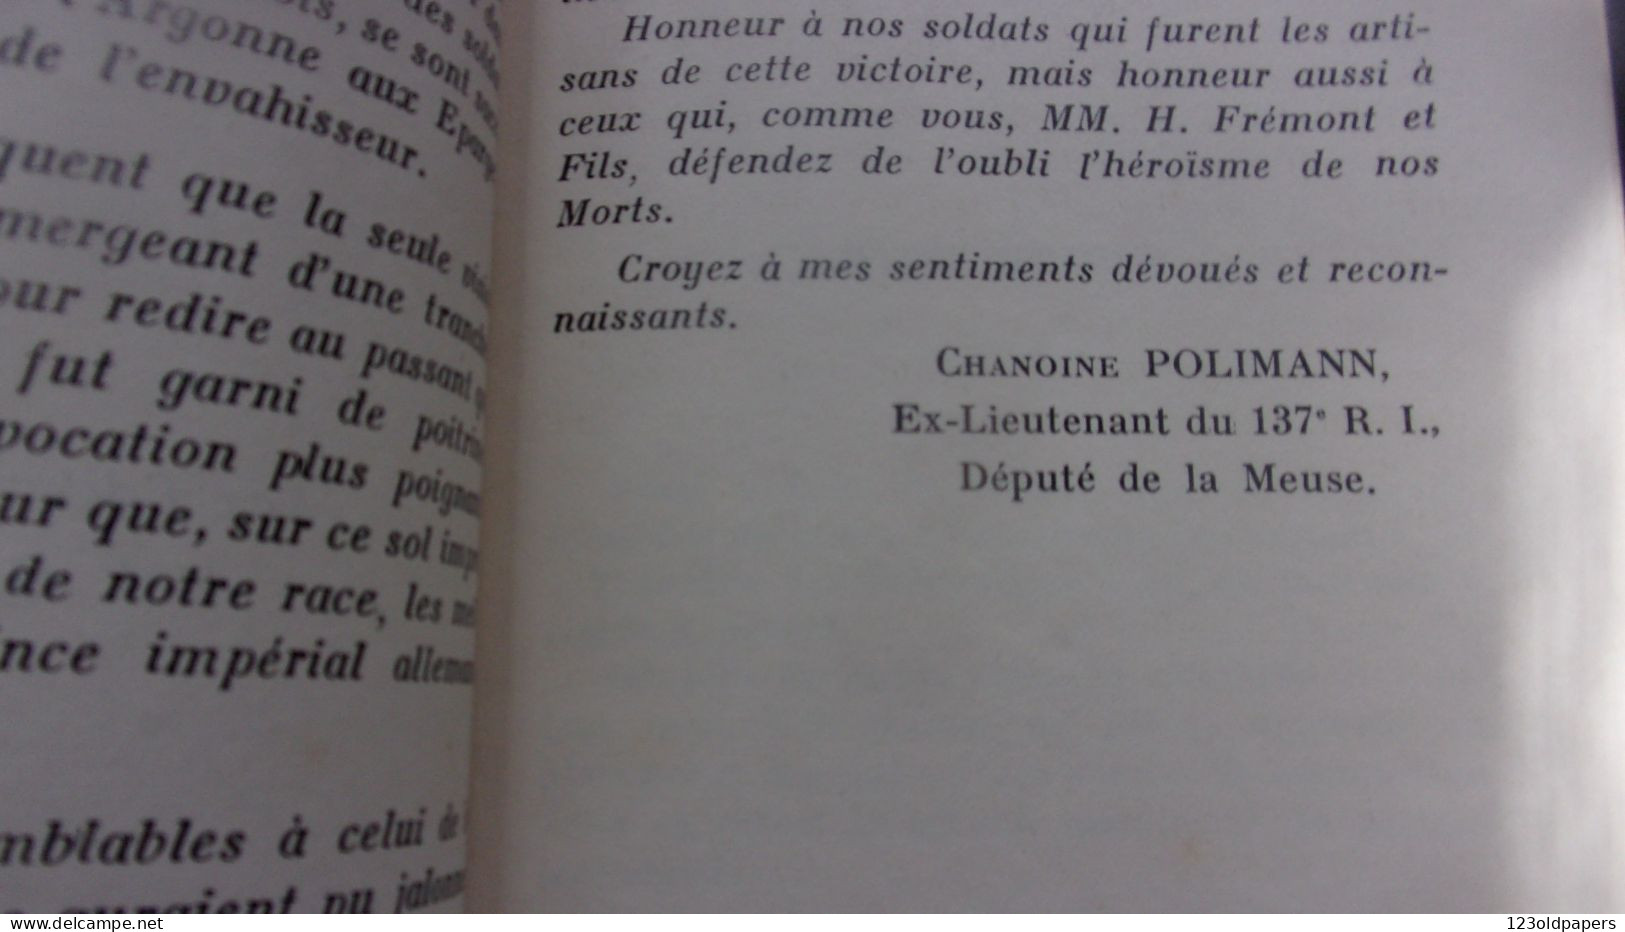 ️  ️  WWI La Tranchée Des Baïonnettes Son Histoire Lettre-préface De M. Le Chanoine Polimann 1939 - Altri & Non Classificati